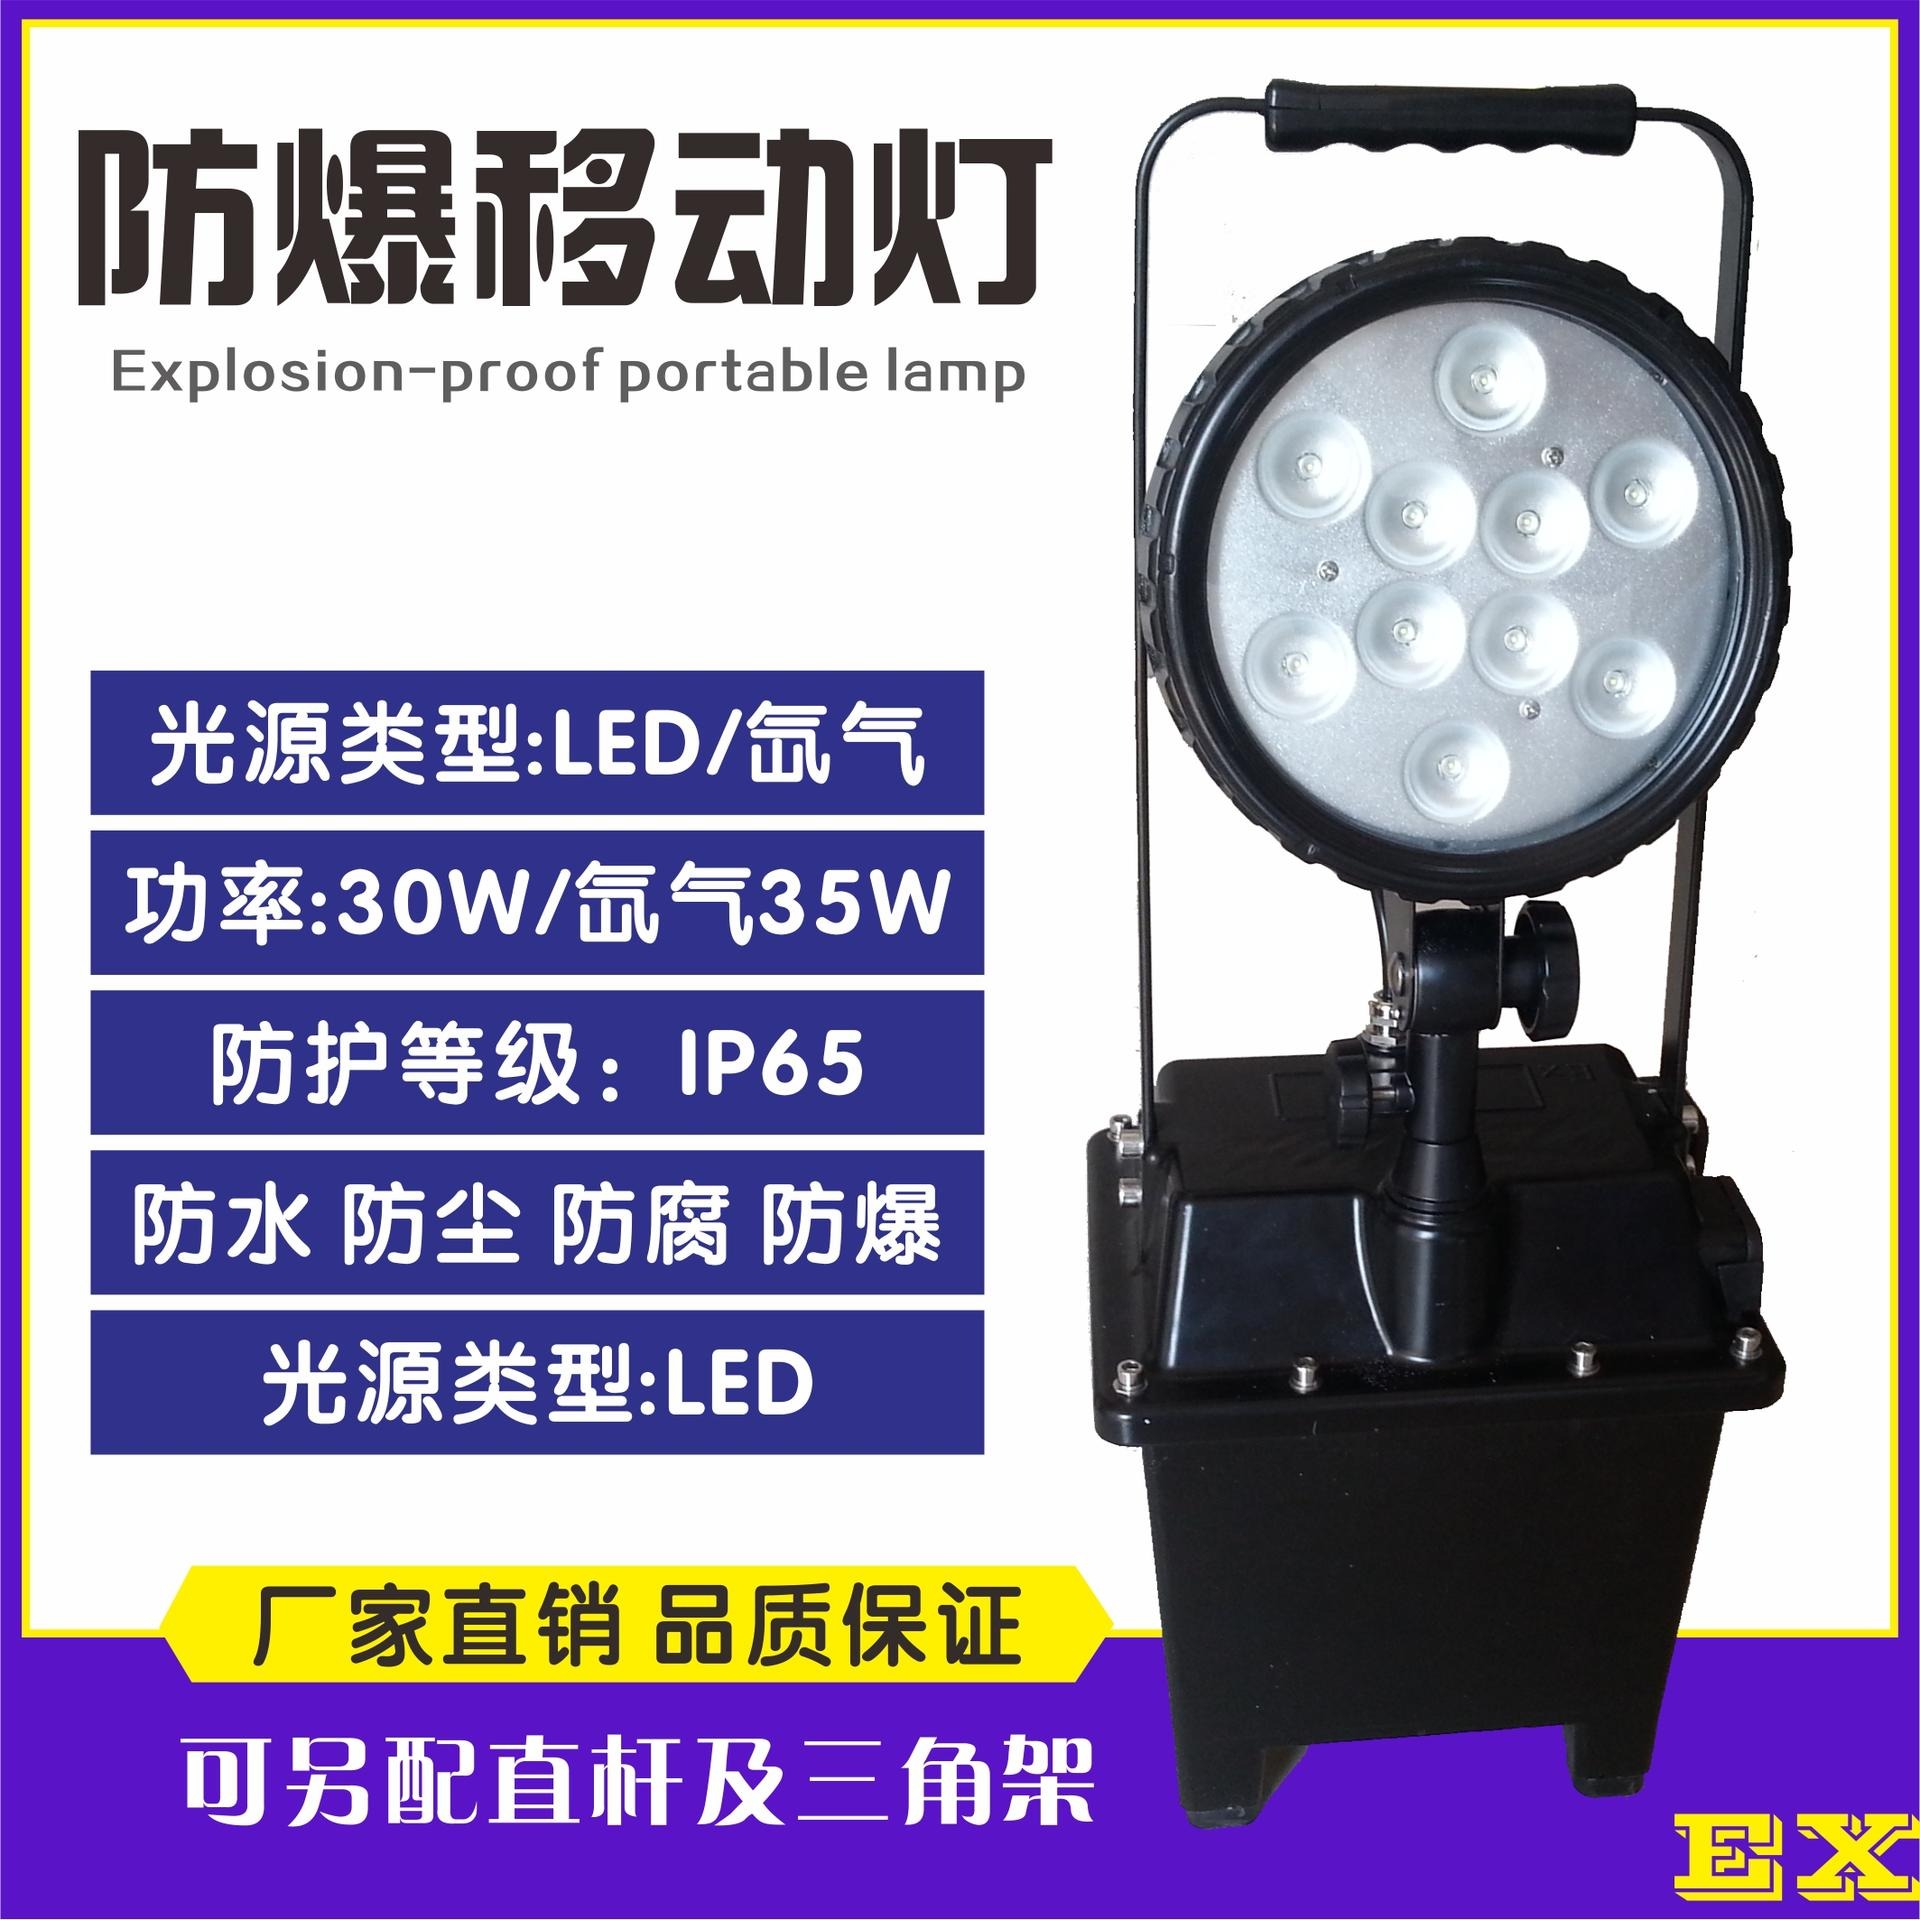 洲创电气固态免维护LED移动照明灯 JIW5281-LED防爆探照灯  隔爆型磁力吸附工作照明灯 检修抢险应急工作灯